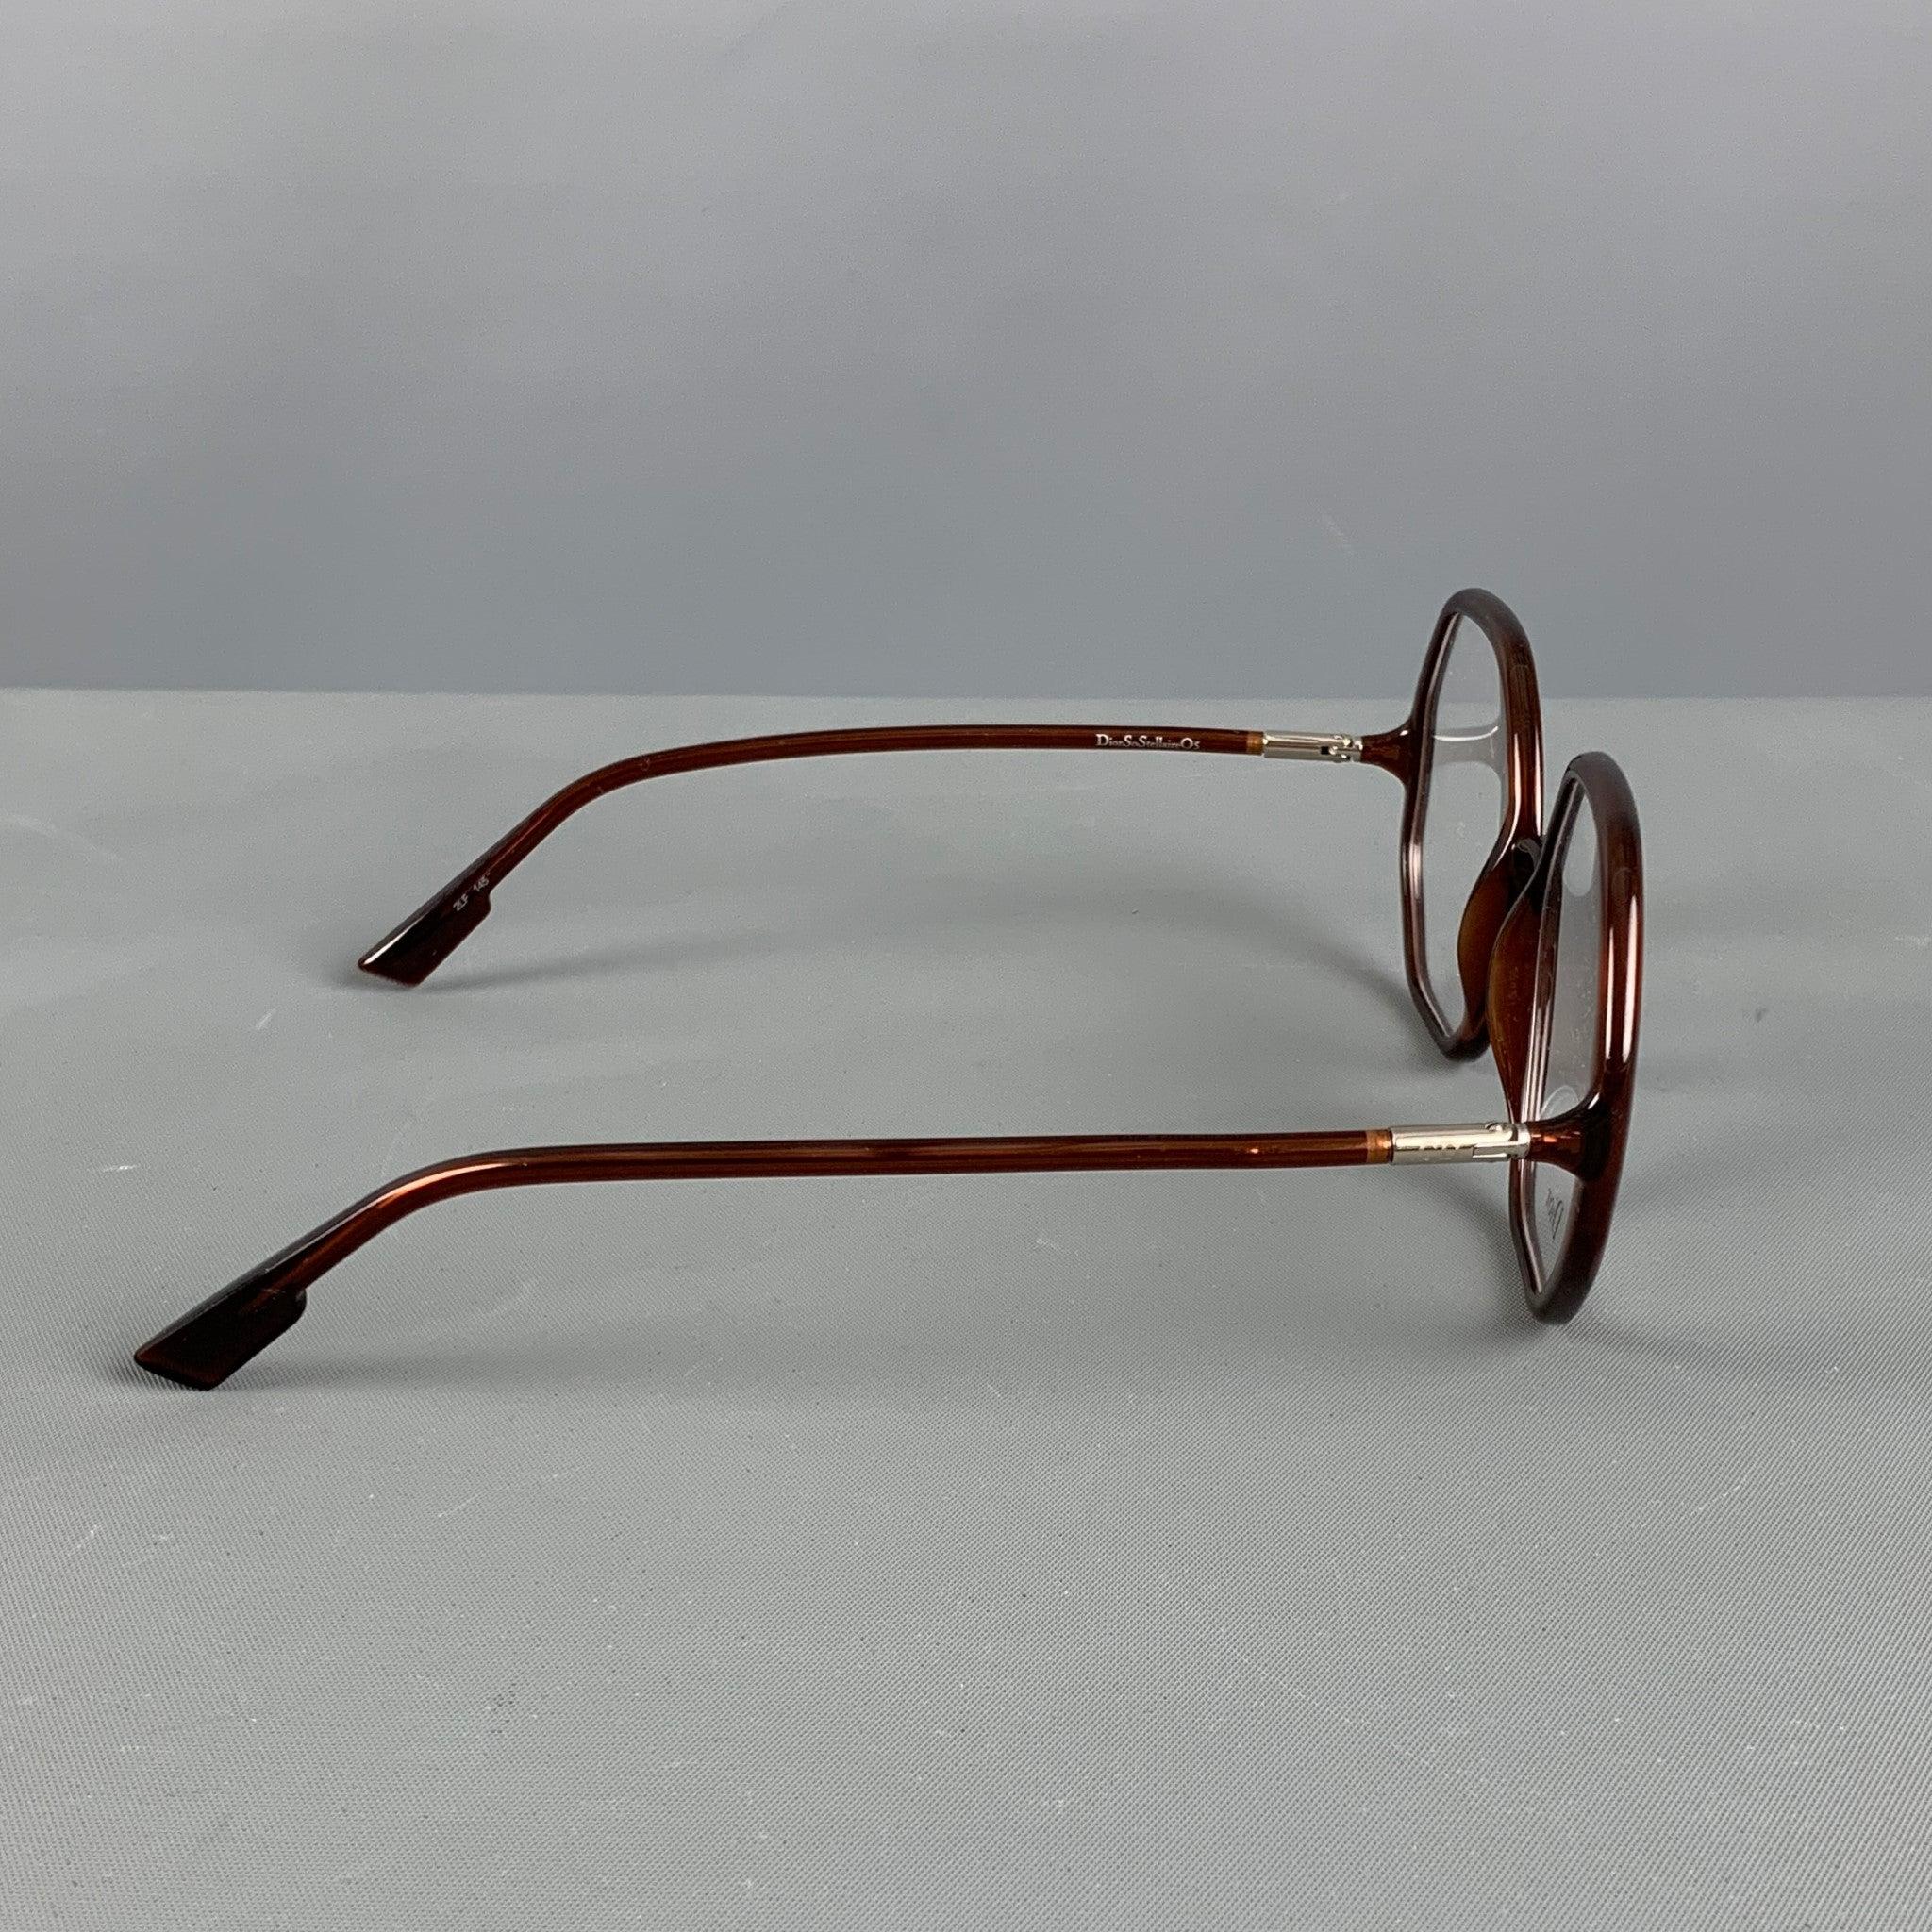 Die CHRISTIAN DIOR DiorSoStellaire05 ist eine Brille aus braunem Acetat. Made in Italy. sehr guter gebrauchter Zustand. 

Markiert:   2LF 145
 

Abmessungen: 
  Länge: 13,5 cm.Höhe: 6 cm.
 

  
  
 
Sui Generis-Referenz: 125443
Kategorie: